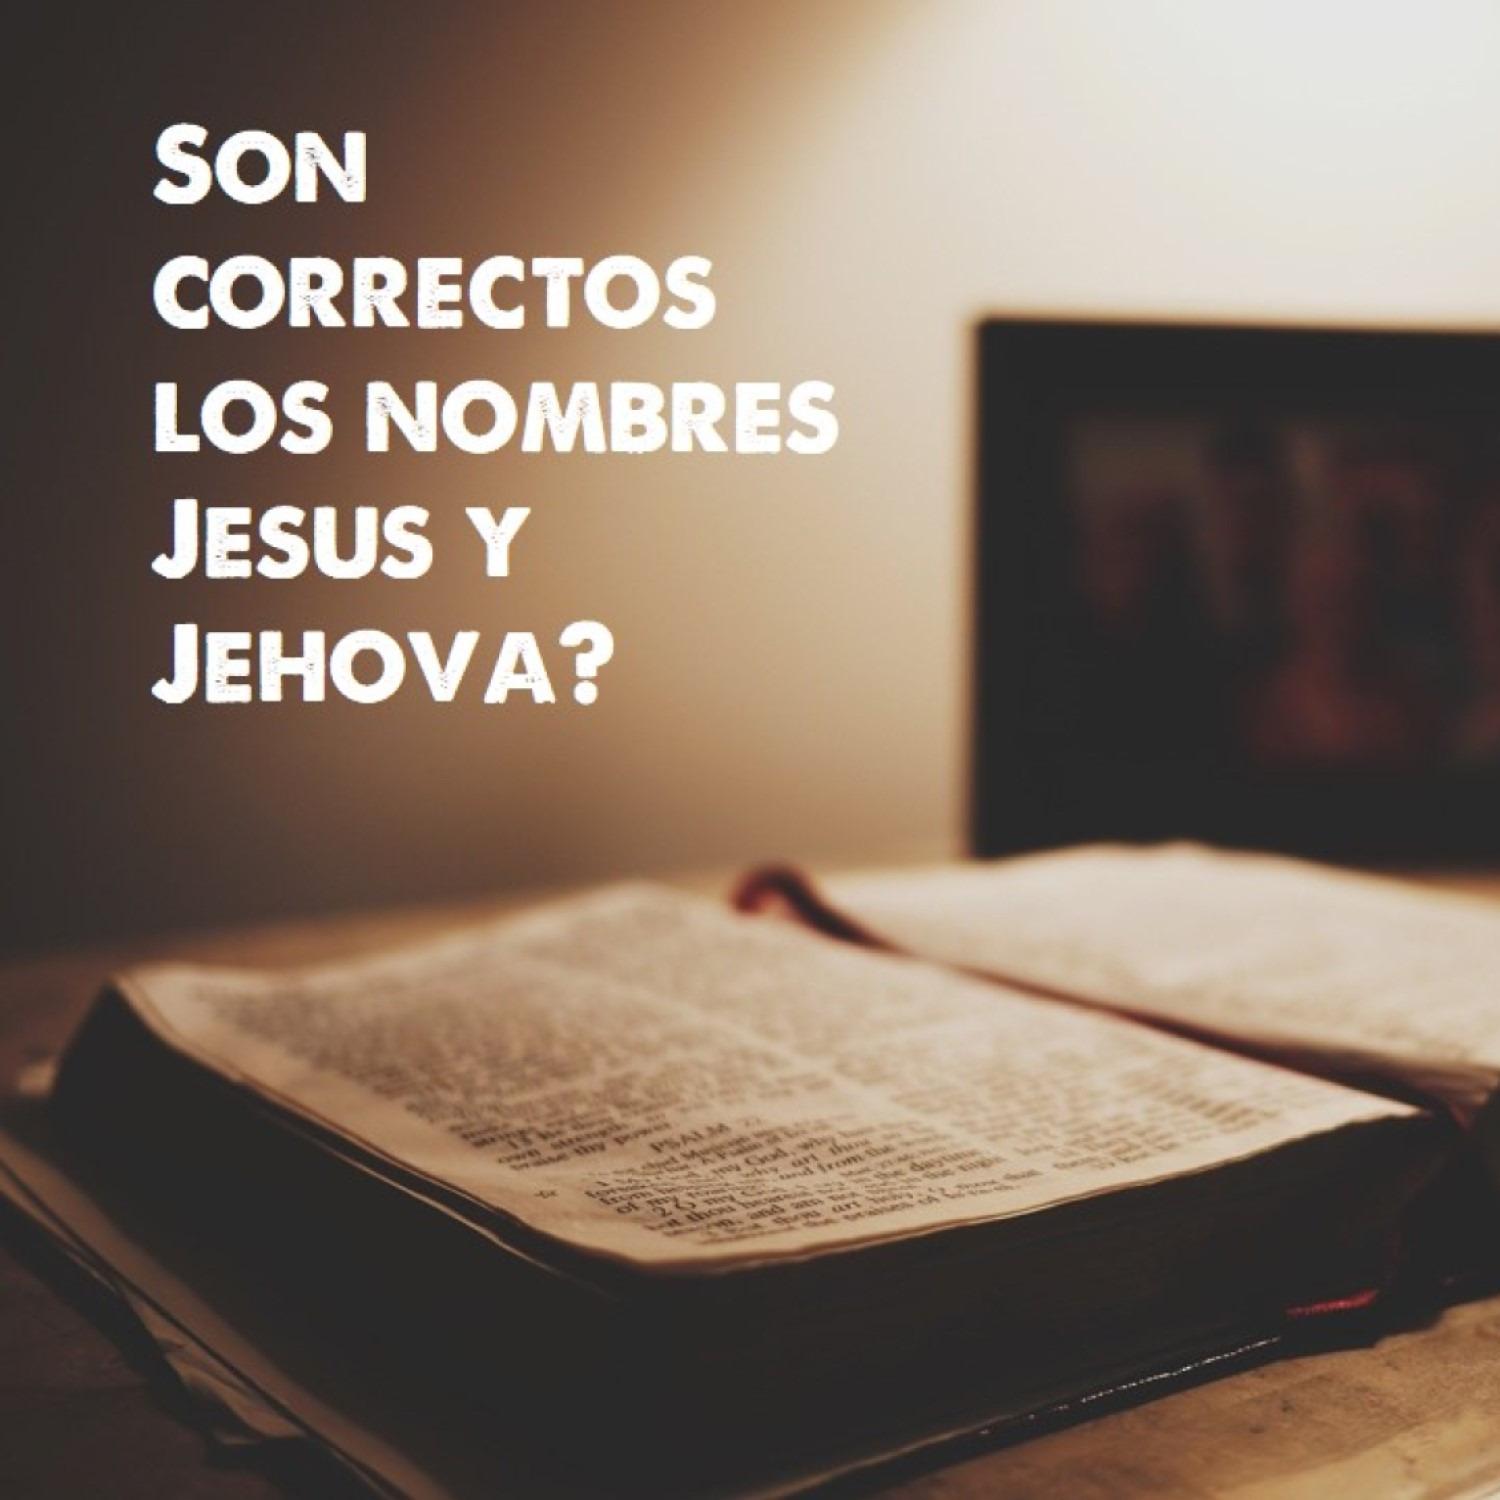 Son Jesus y Jehova los nombres correctos?